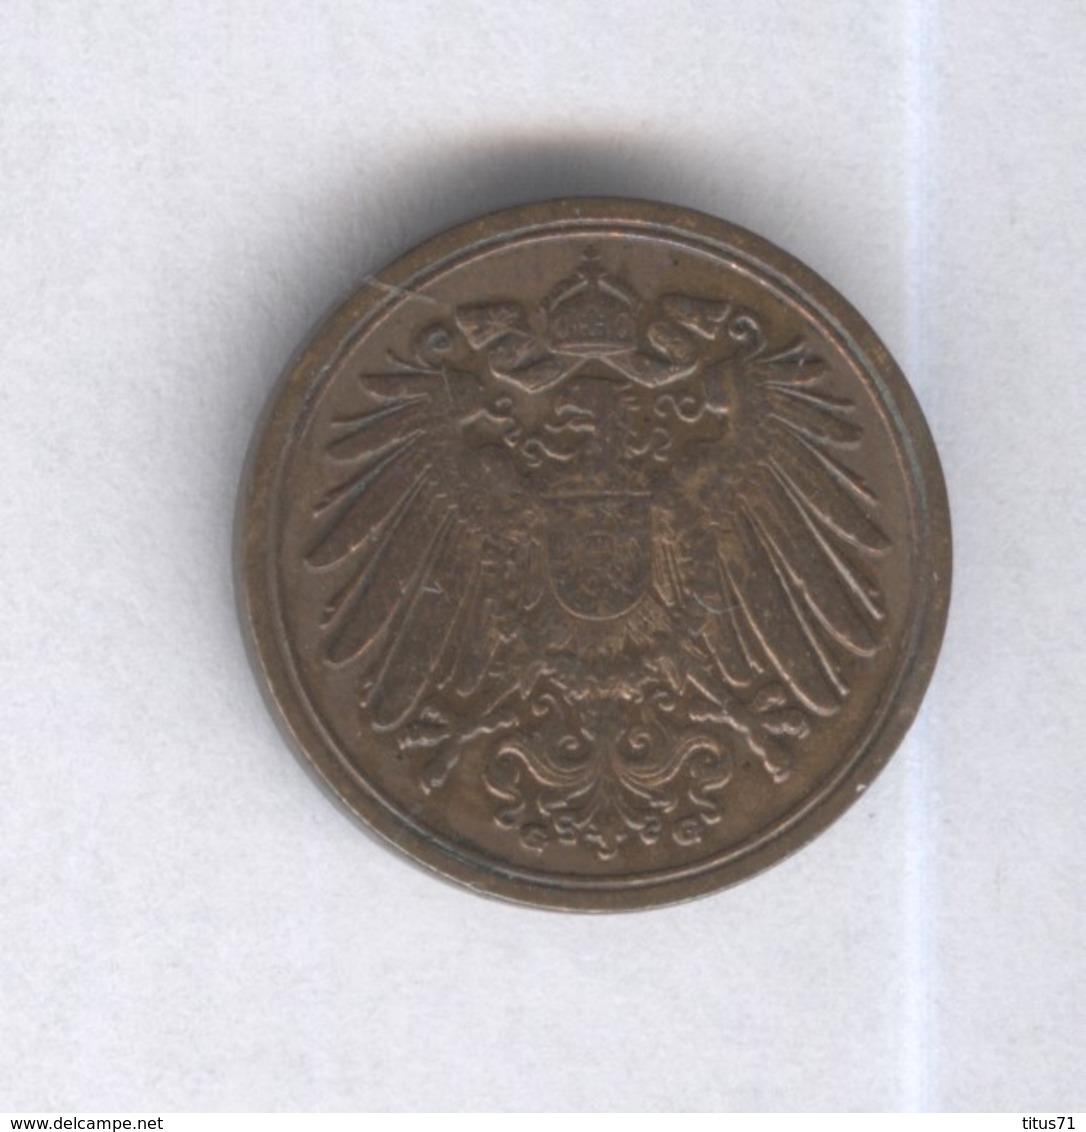 1 Pfennig Allemagne / Germany 1900 - TTB - 1 Pfennig